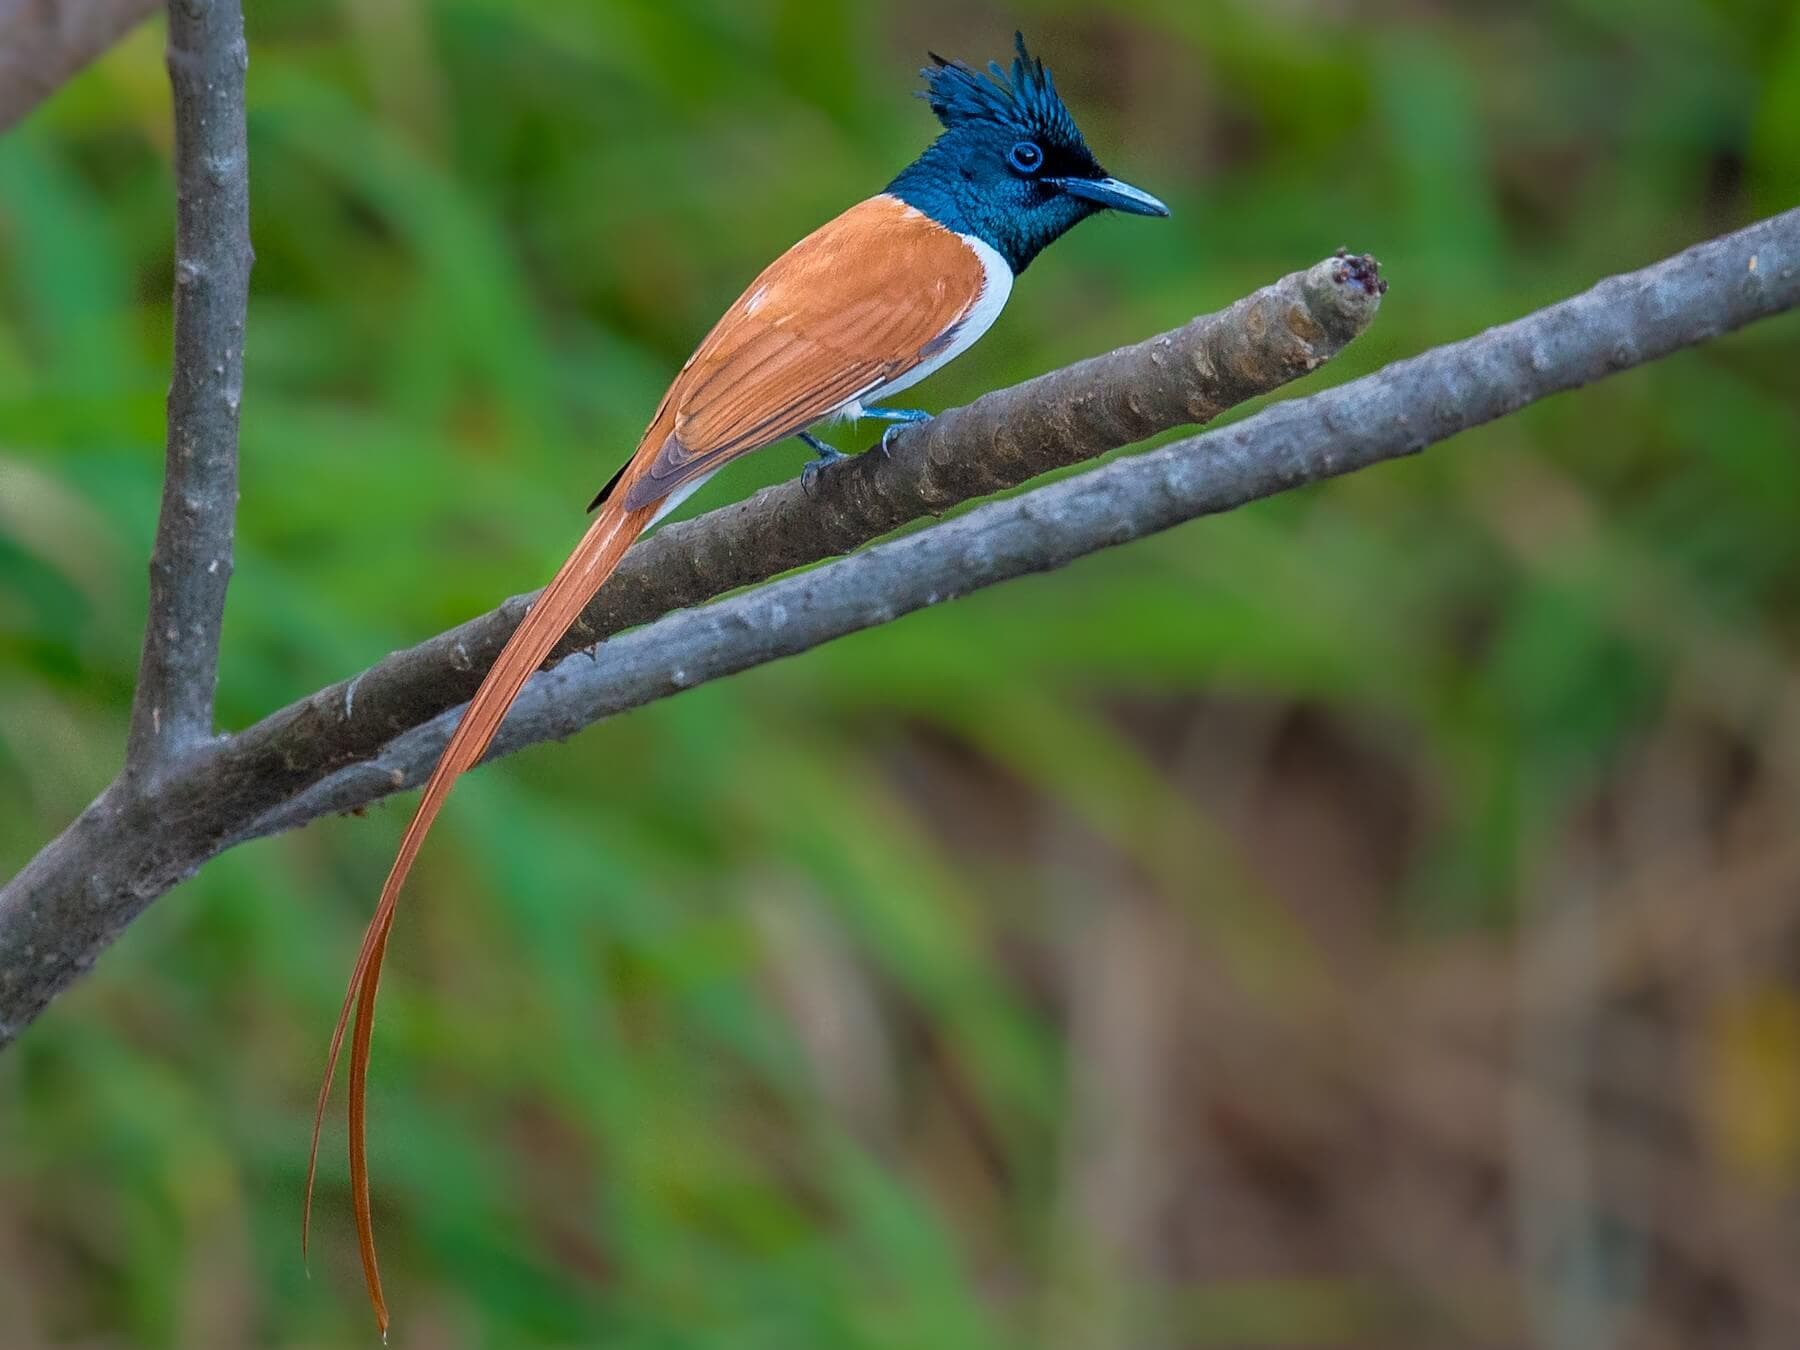  一只长相优雅的捕蝇器，成年雄性运动着一条长长的丝带状尾巴，生活在锡吉里亚地区